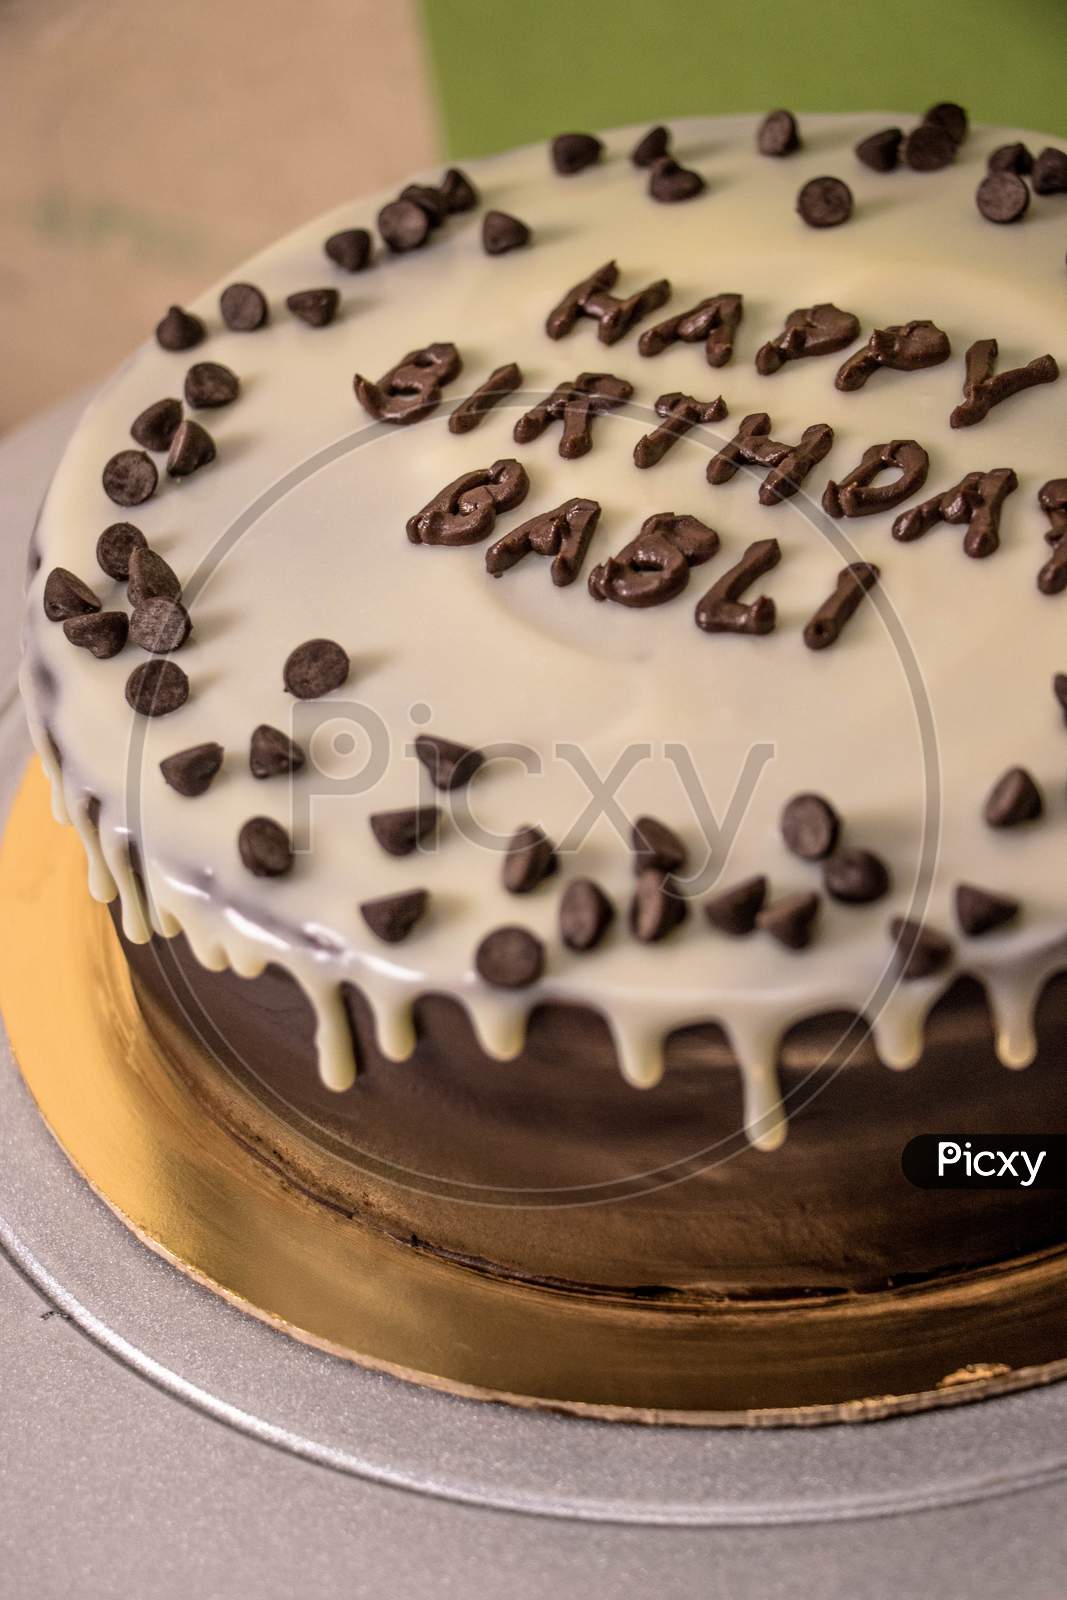 Image of Vanilla chocolate chip birthday cake-KW663845-Picxy